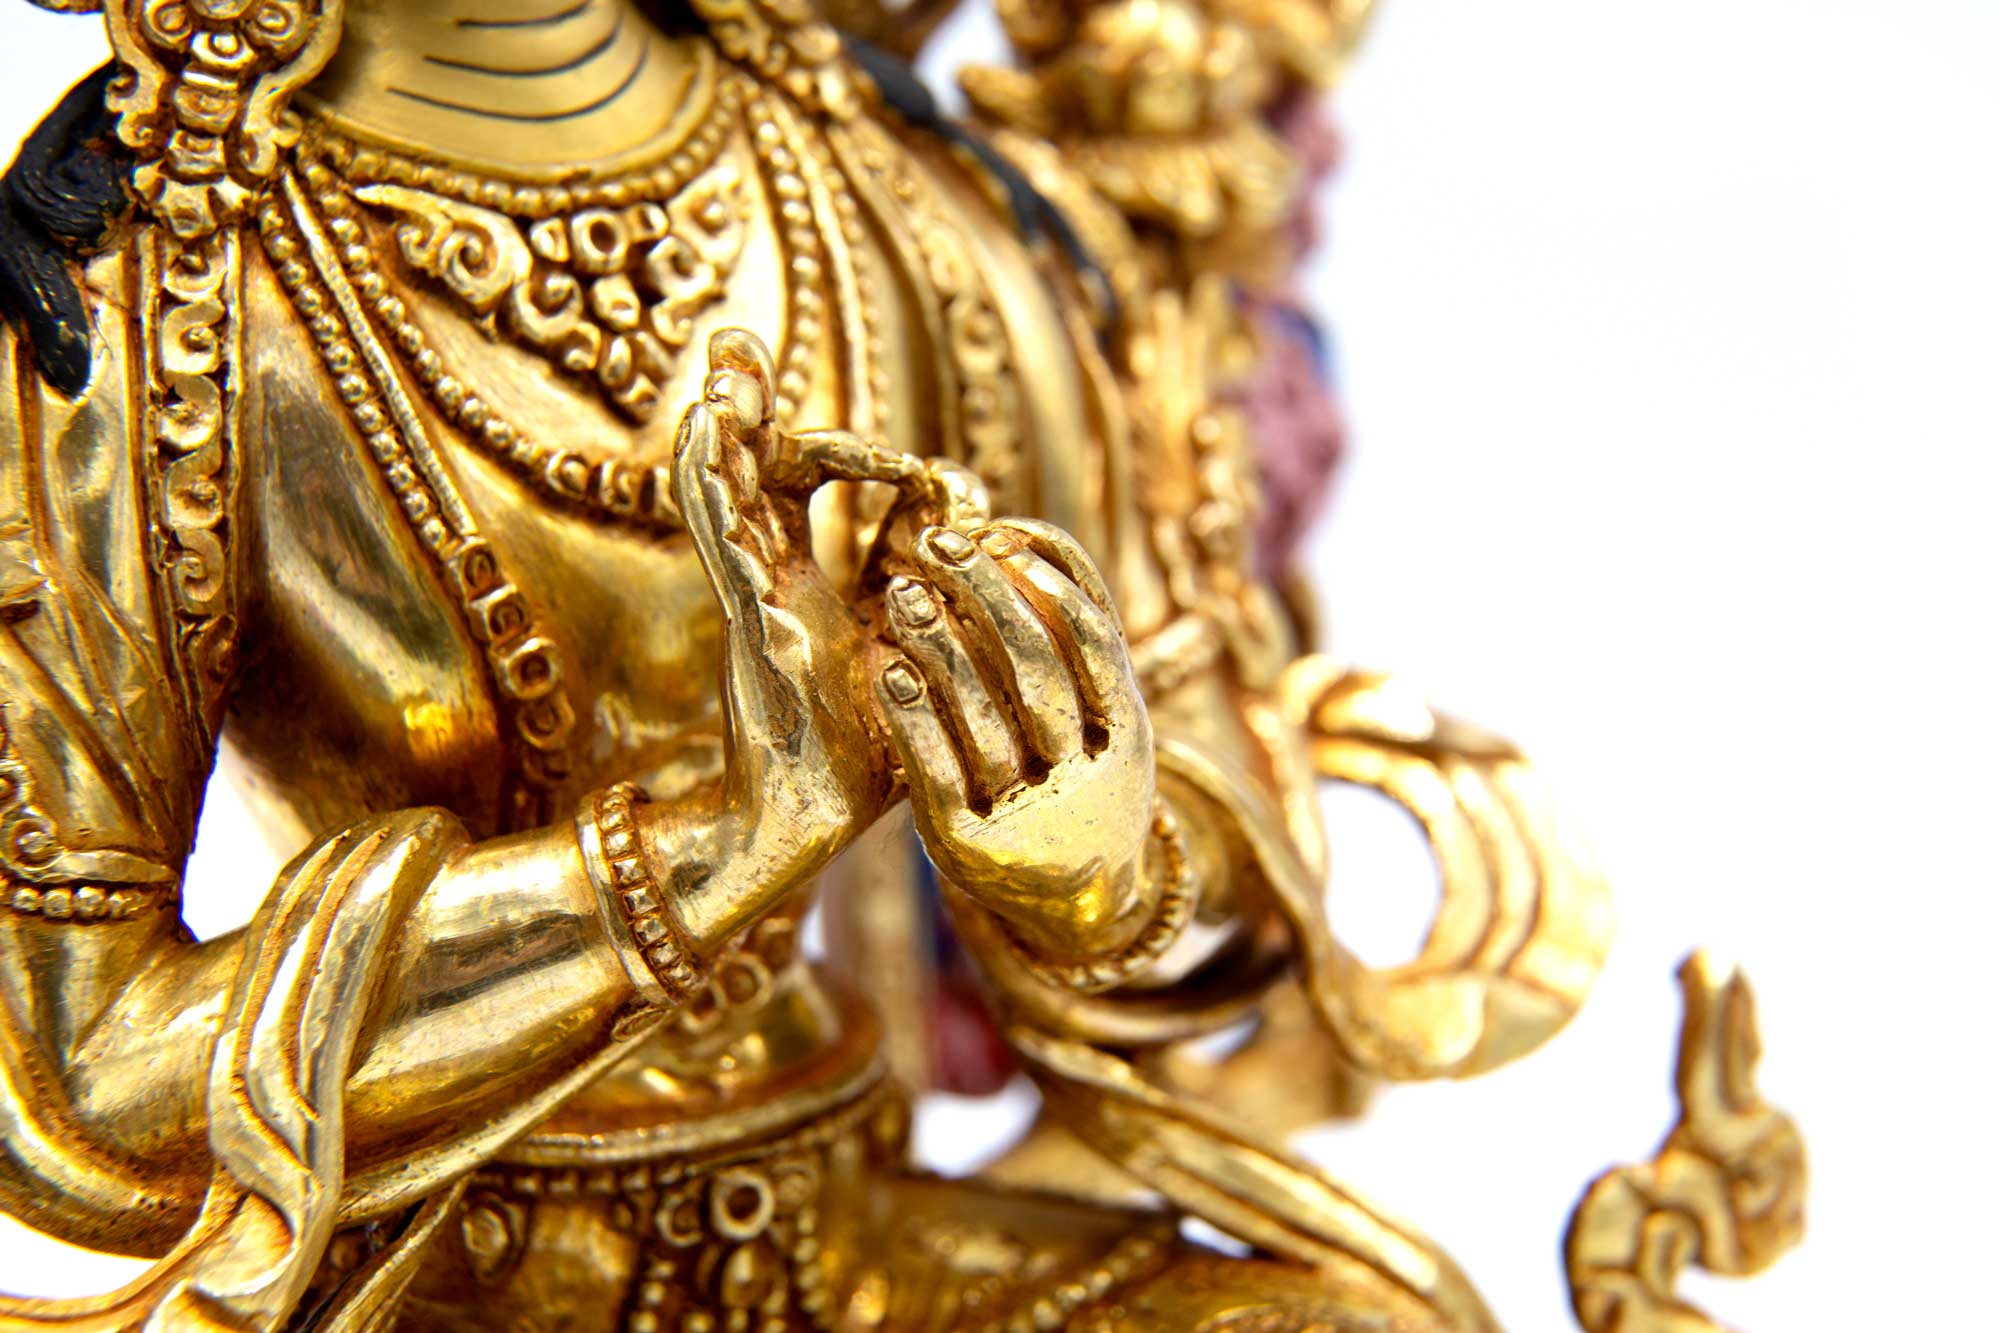 Maitreya Statue - Fully gilded - 14"